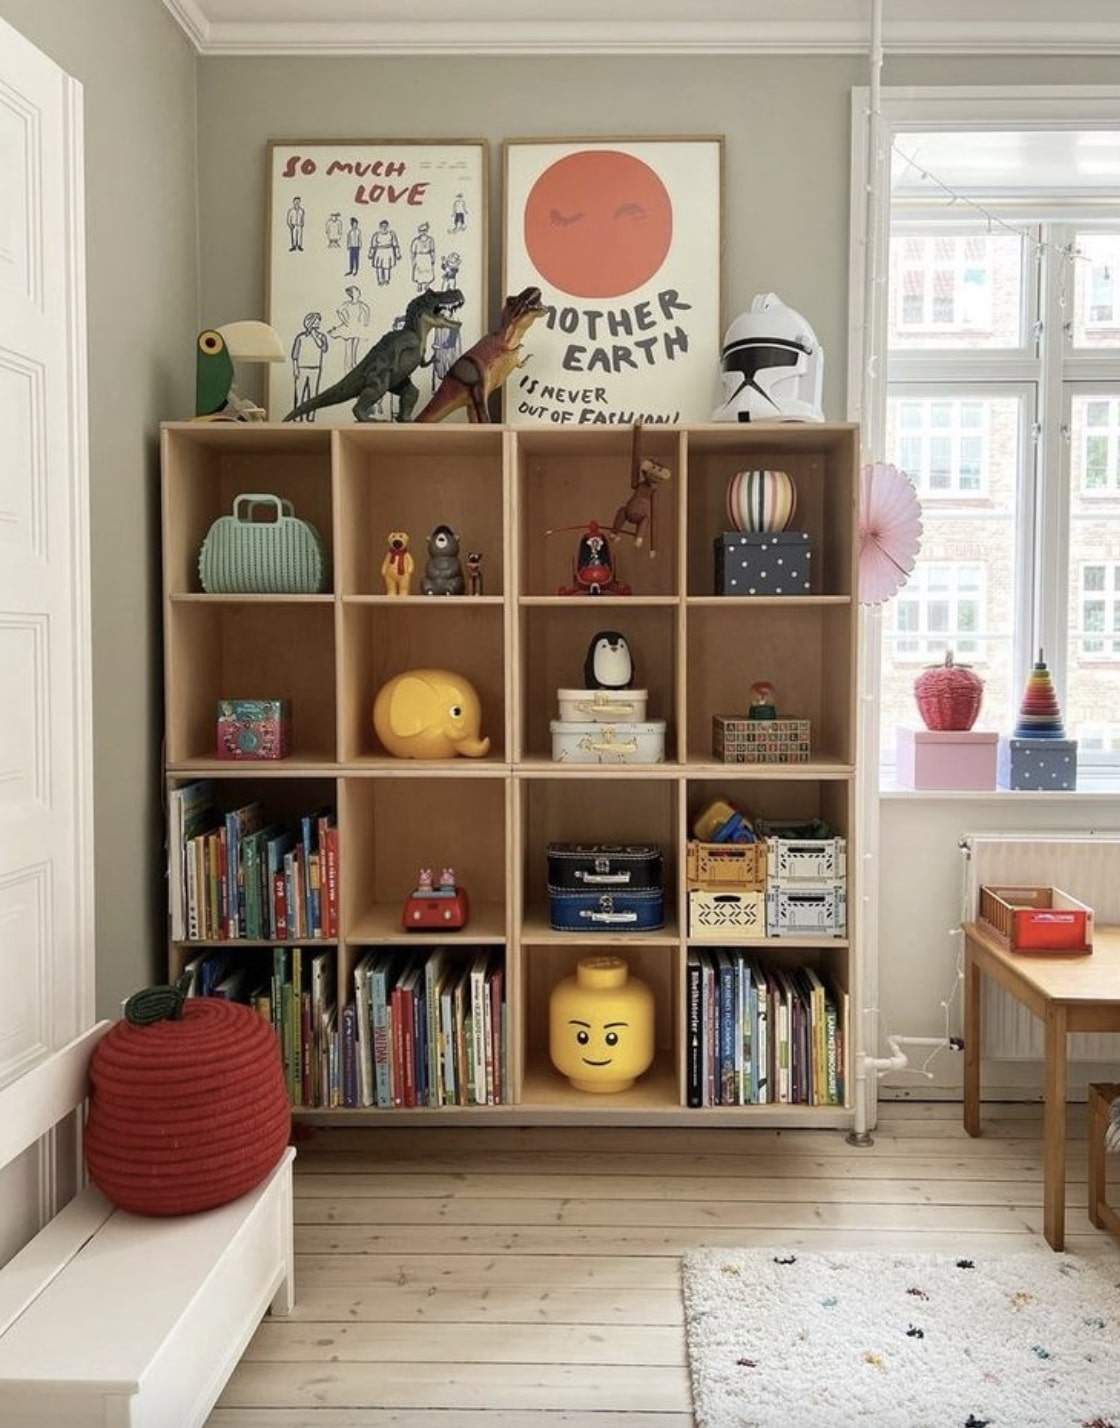 ιδέες διακόσμησης παιδικού δωματίου βιβλιοθήκη ξύλινη βιβλία παιδικά